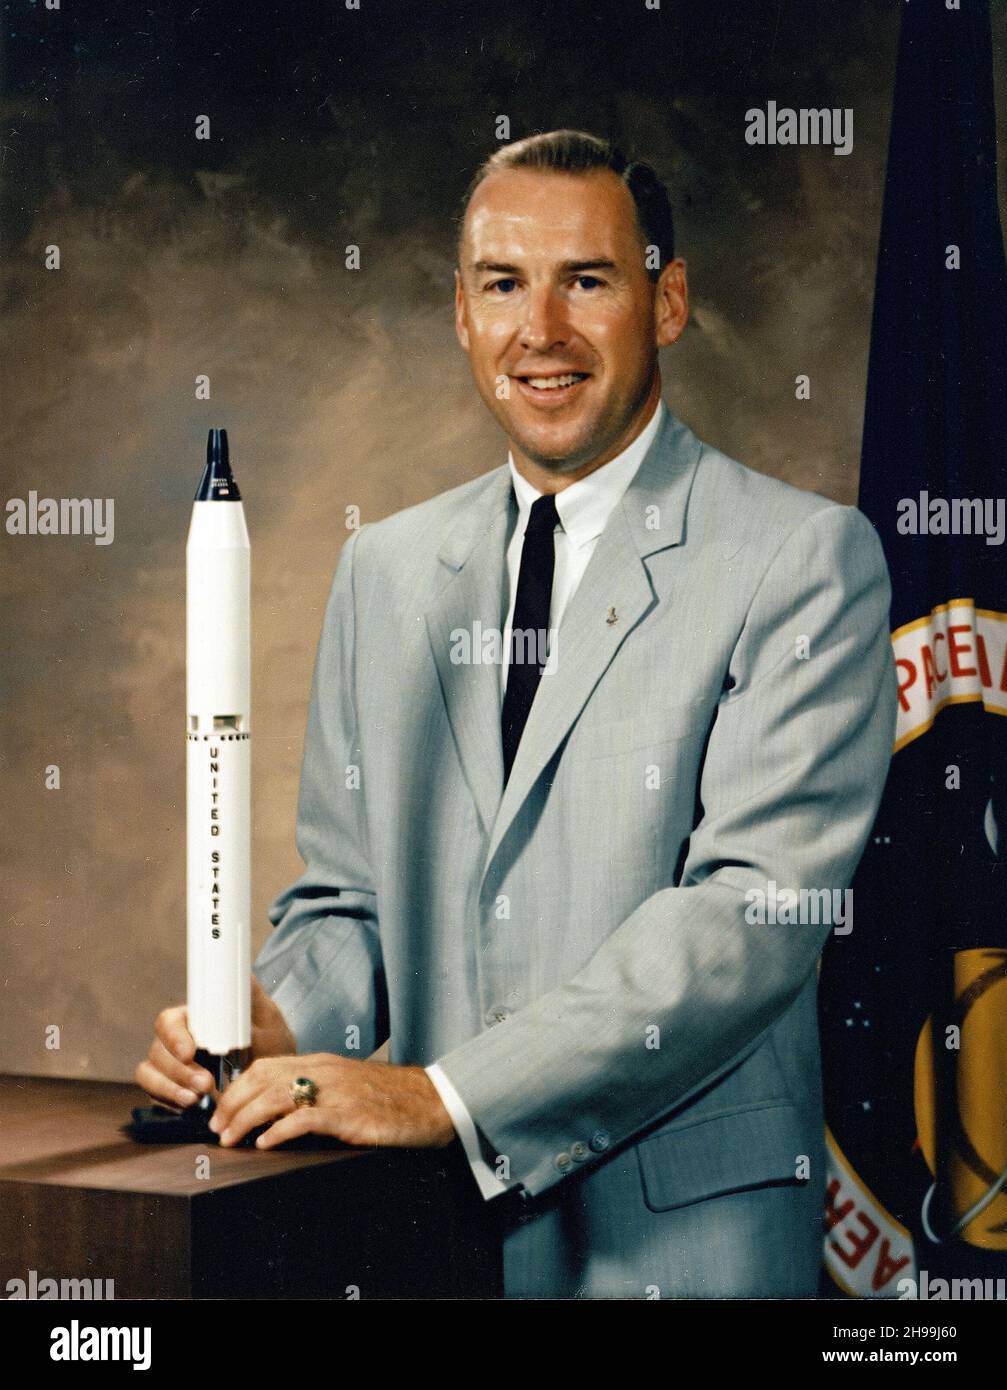 Astronaut Jim Lovell. Offizielles NASA-Porträt des Astronauten James Lovell. Captain Lovell wurde im September 1962 von der NASA als Astronaut ausgewählt. James Arthur Lovell Jr. (geb. 1928) amerikanischer pensionierter Astronaut, Marineflieger, Testpilot und Maschinenbauingenieur. Stockfoto